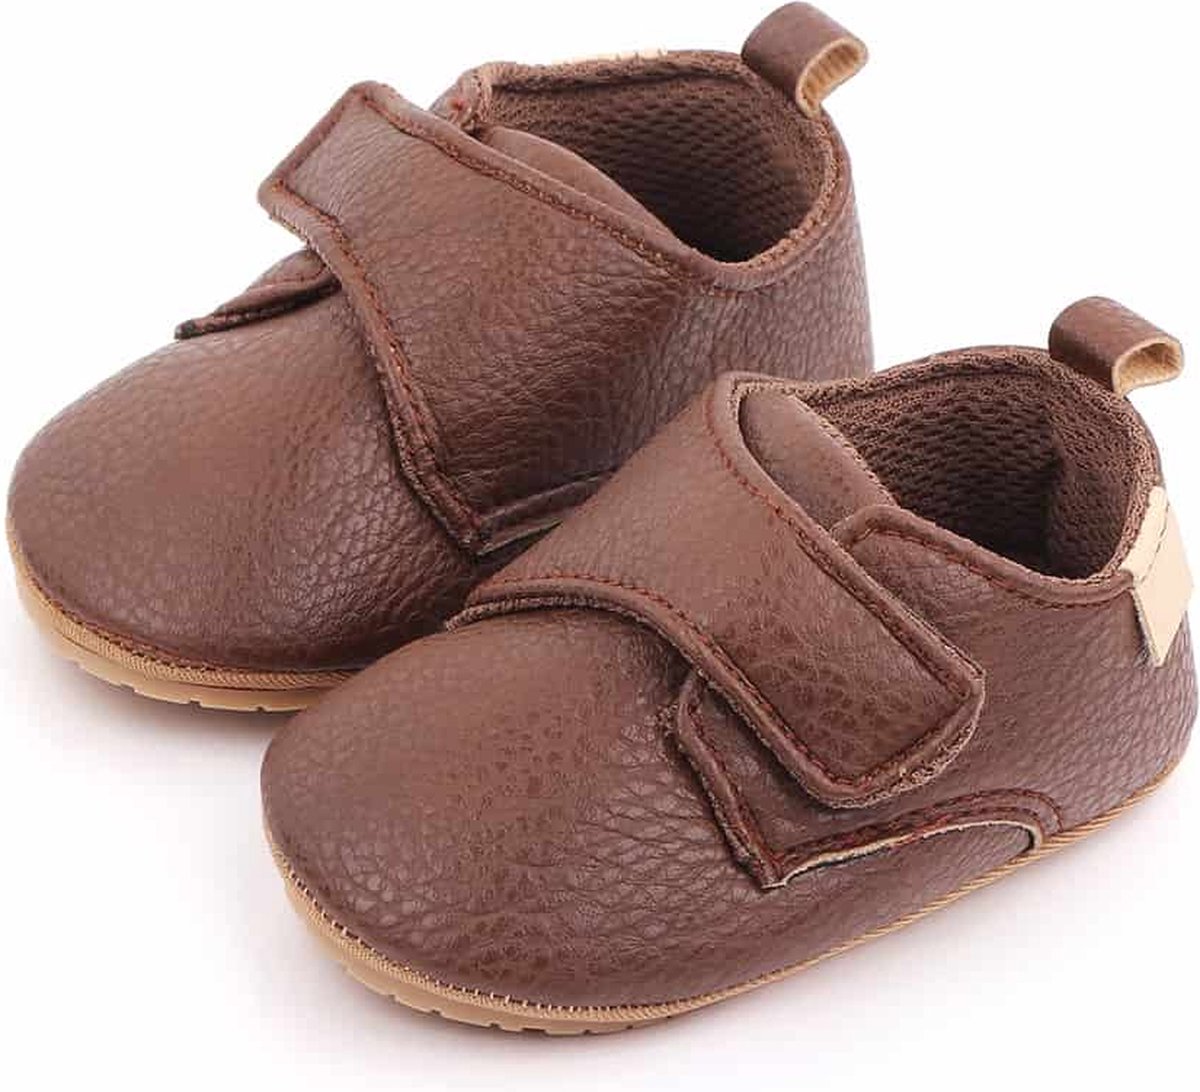 Babyschoentjes – Eerste loopschoentjes - PU Leer completebabyuizet - schoentjes voor Meisjes en Jongens - 12-18 Maanden (13cm) – Donkerbruin - Completebabyuitzet